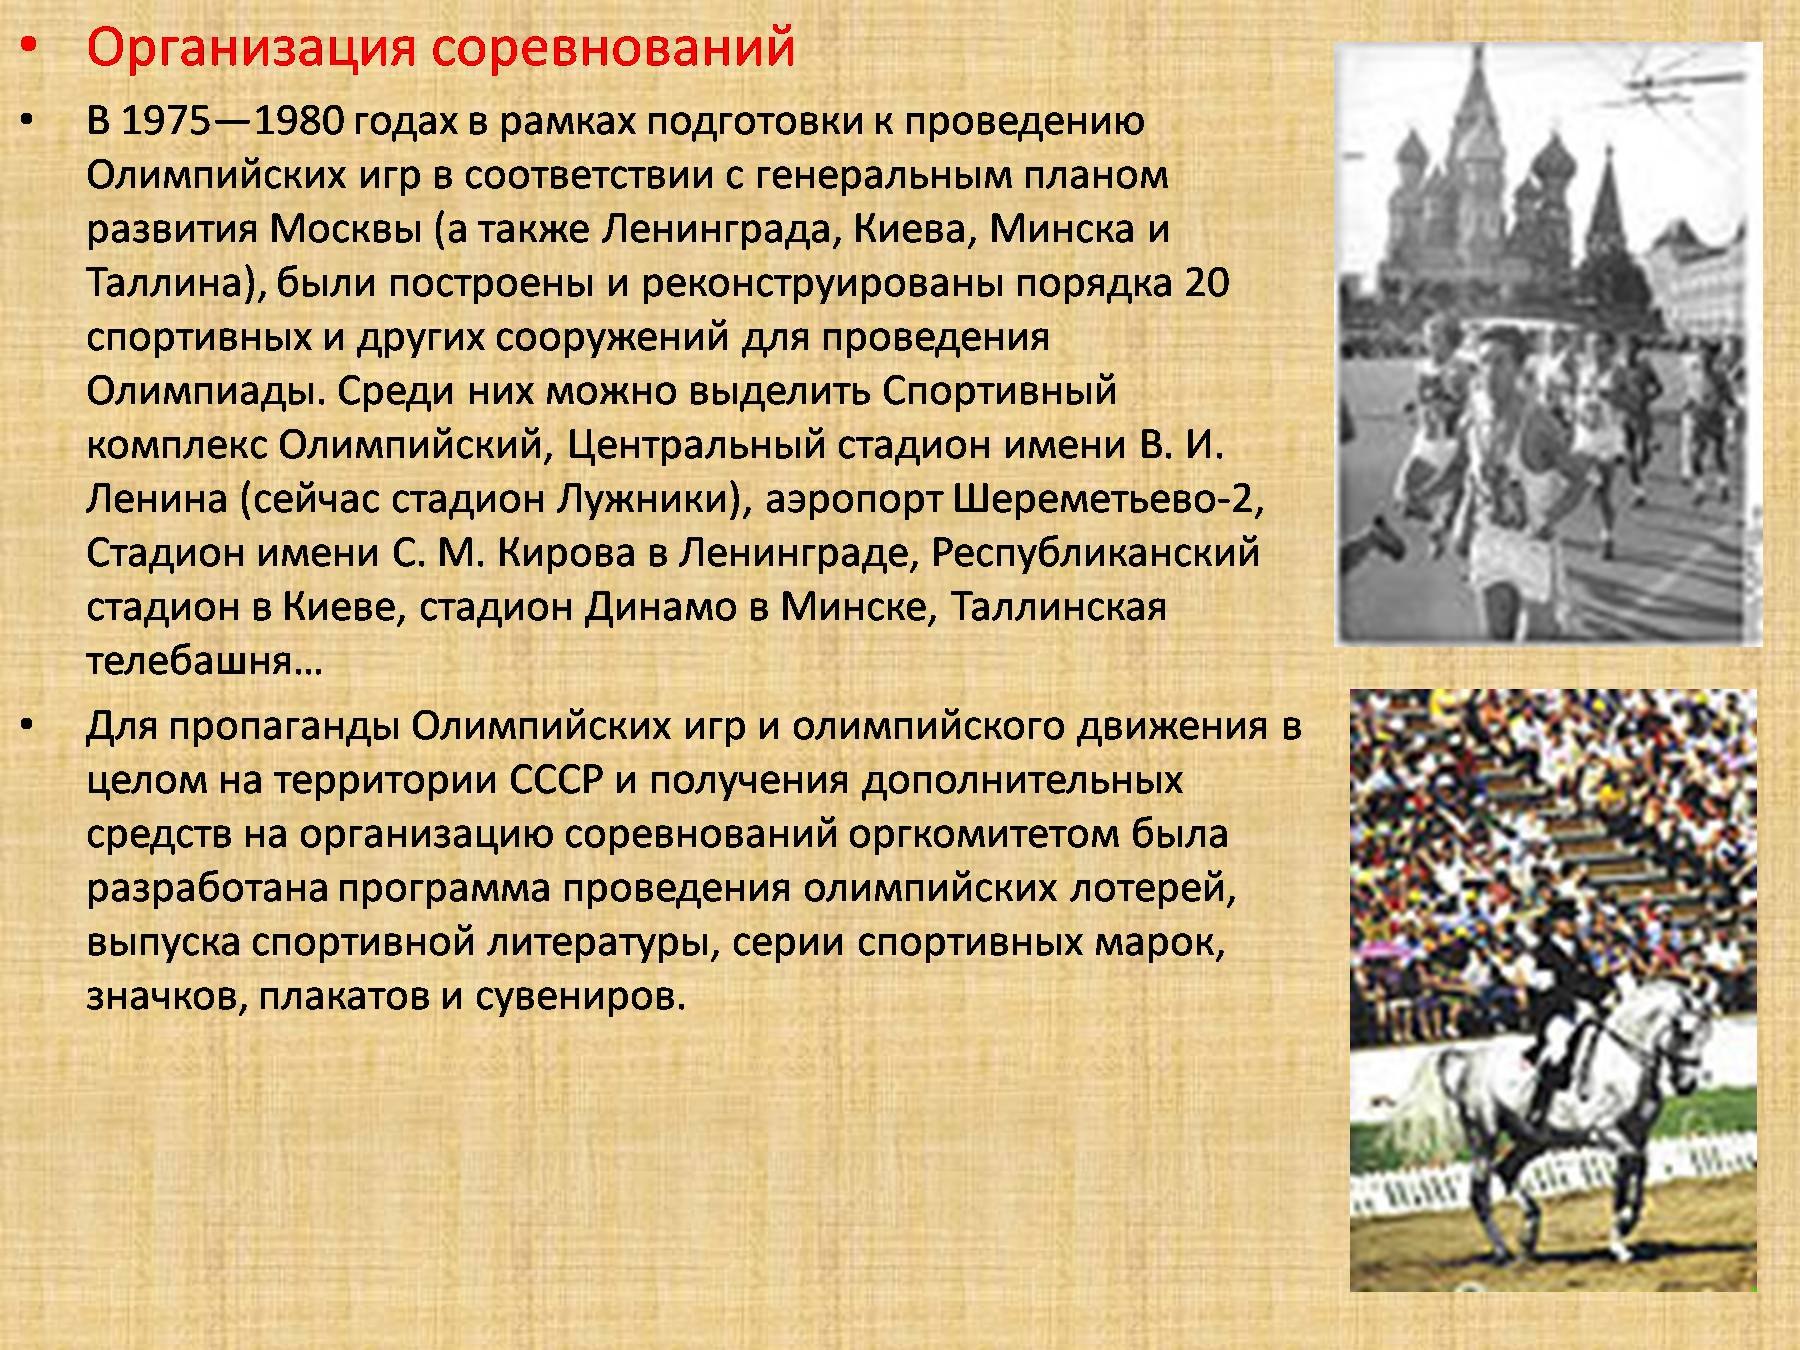 Организация и проведение олимпиады. Олимпийские игры в Москве 1980 презентация. Олимпийские игры 1980 года в Москве презентация.